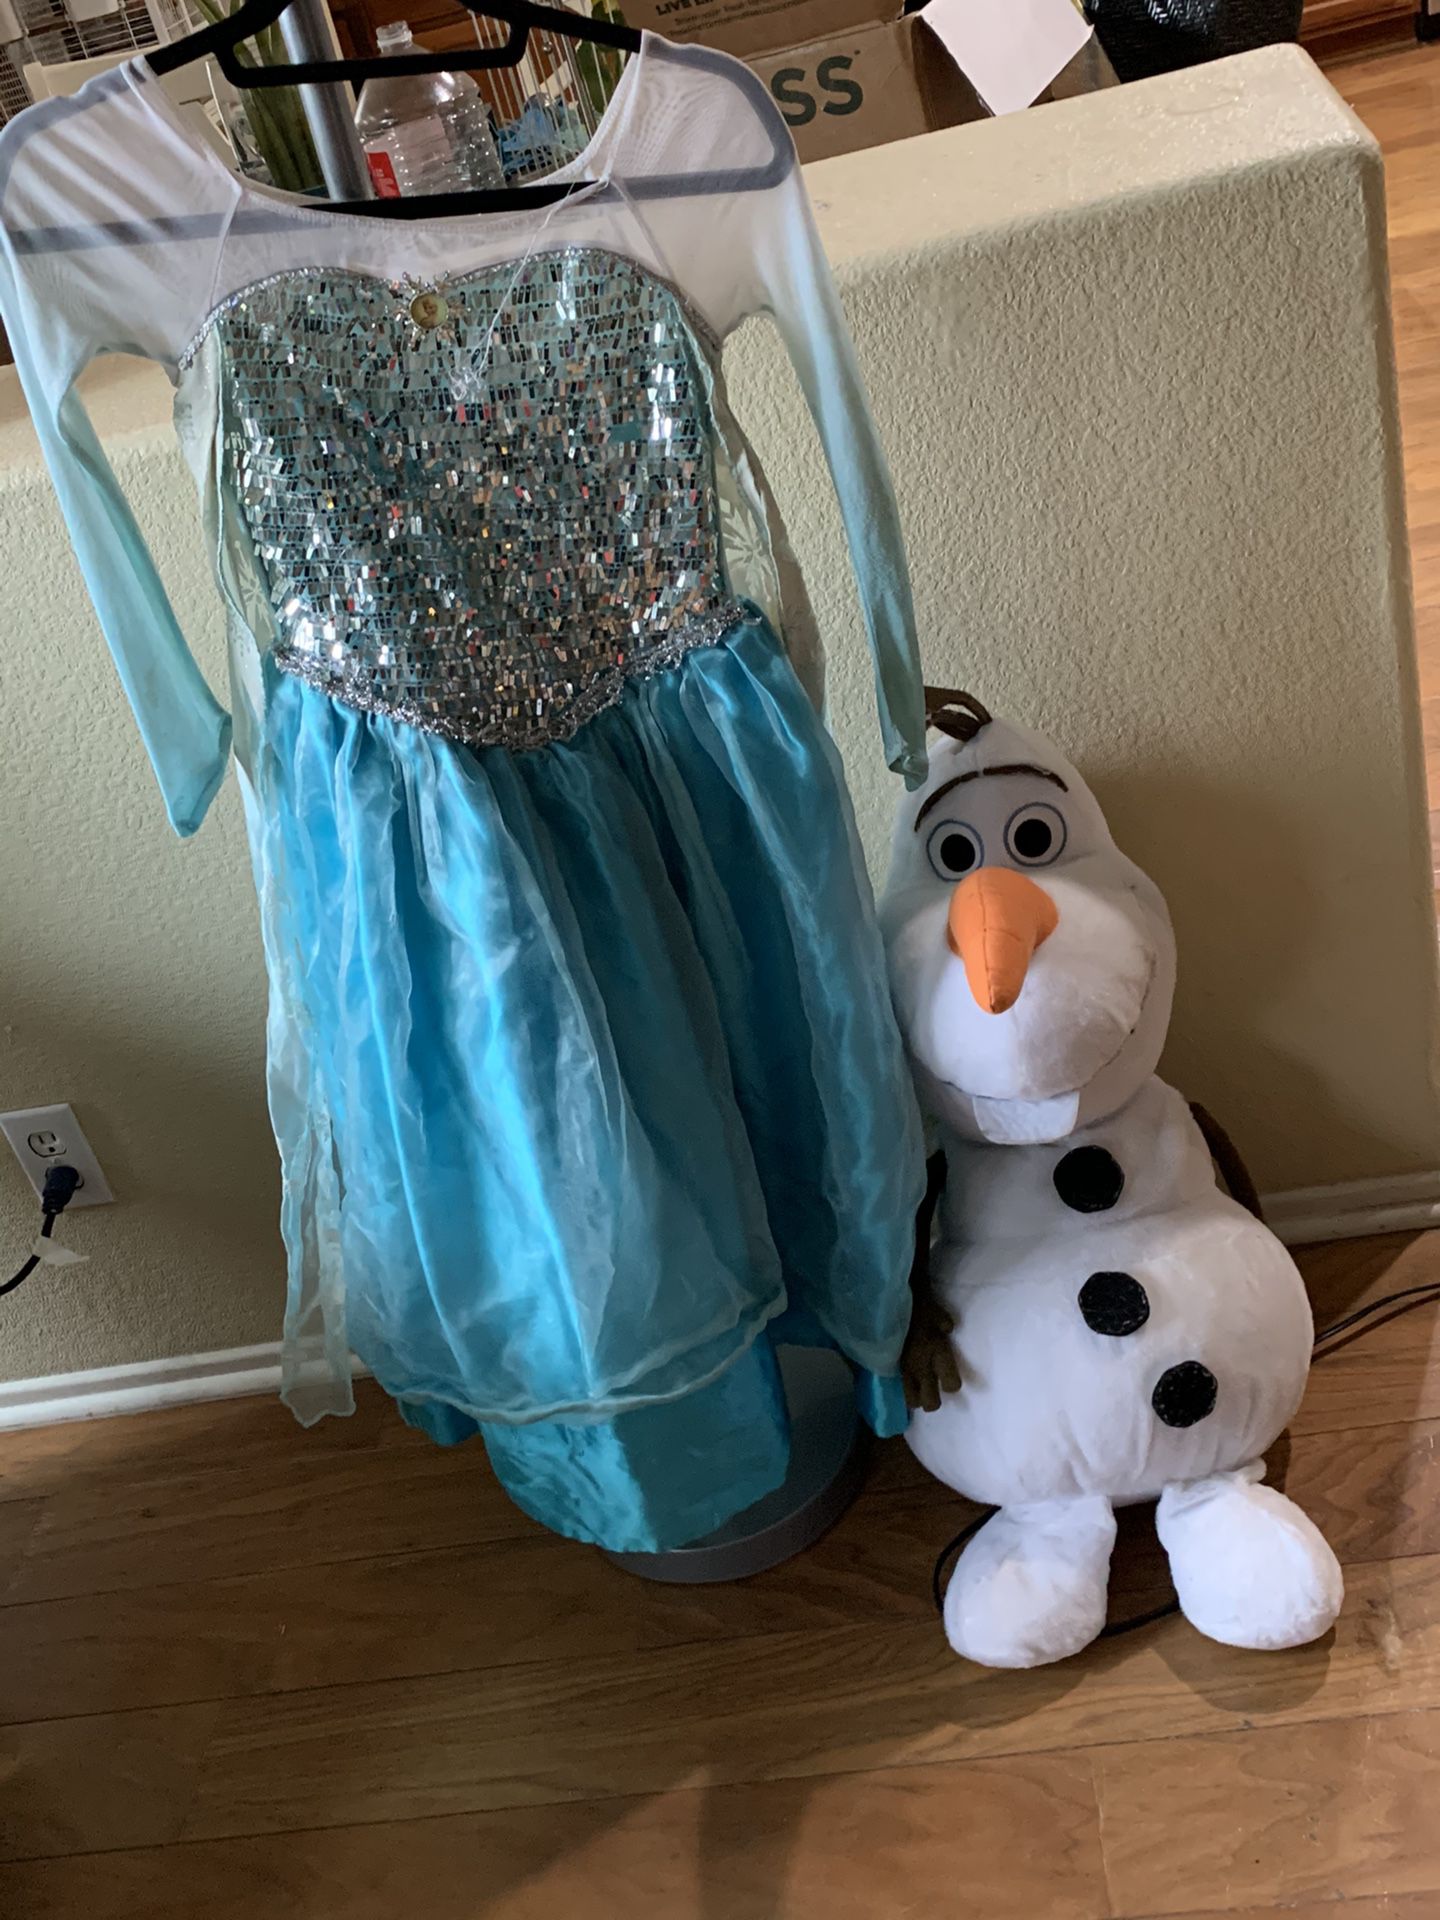 Elsa dress and Olaf